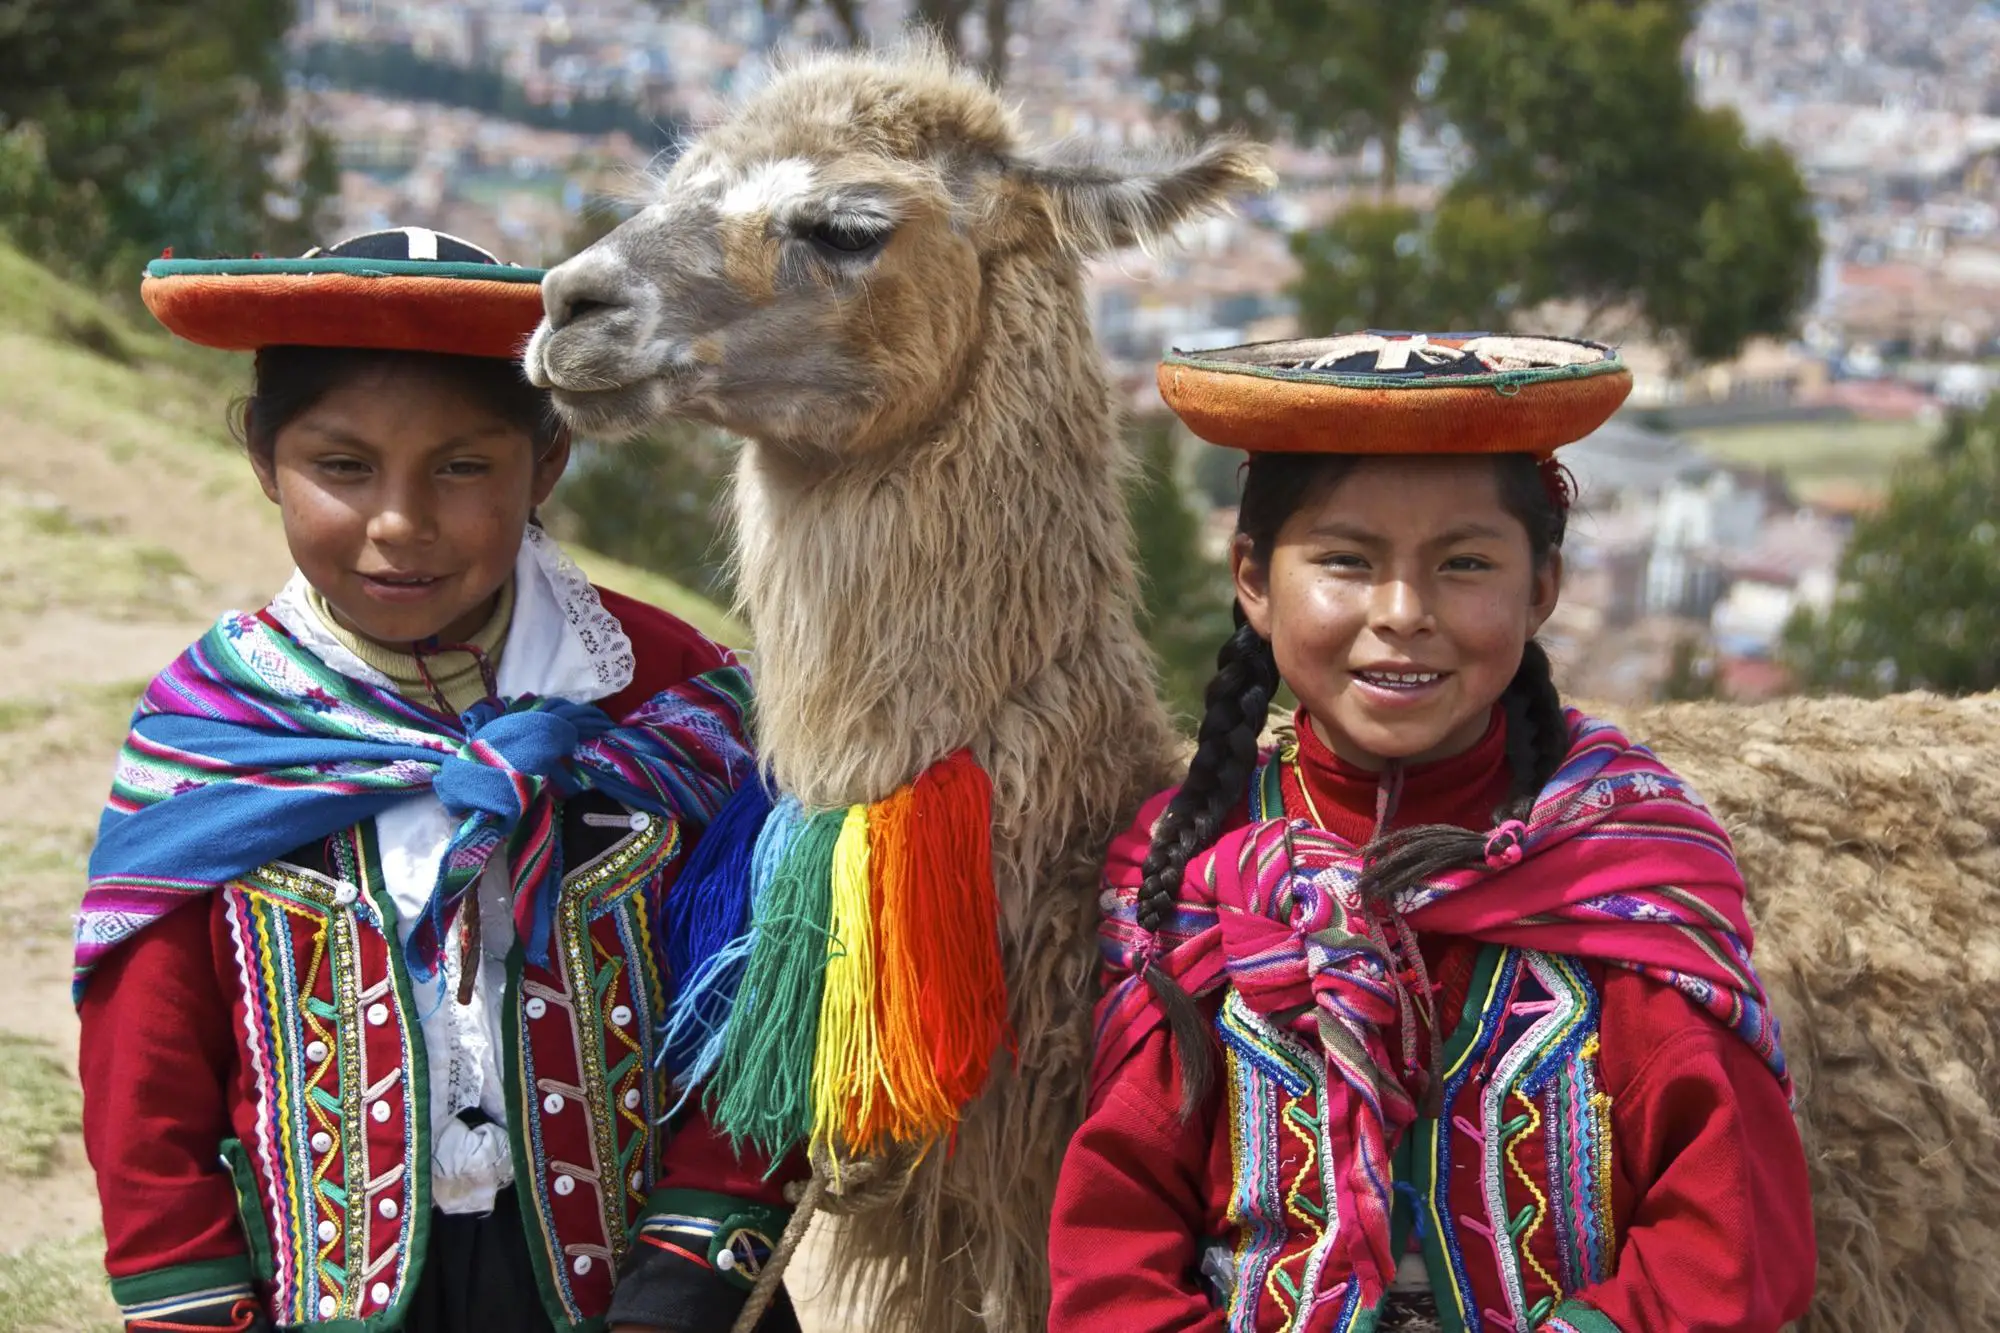 Культура и быт южной америки. Индейцы кечуа в Эквадоре. Индейцы кечуа в Перу. Индейцы аймара. Племя кечуа Эквадор.